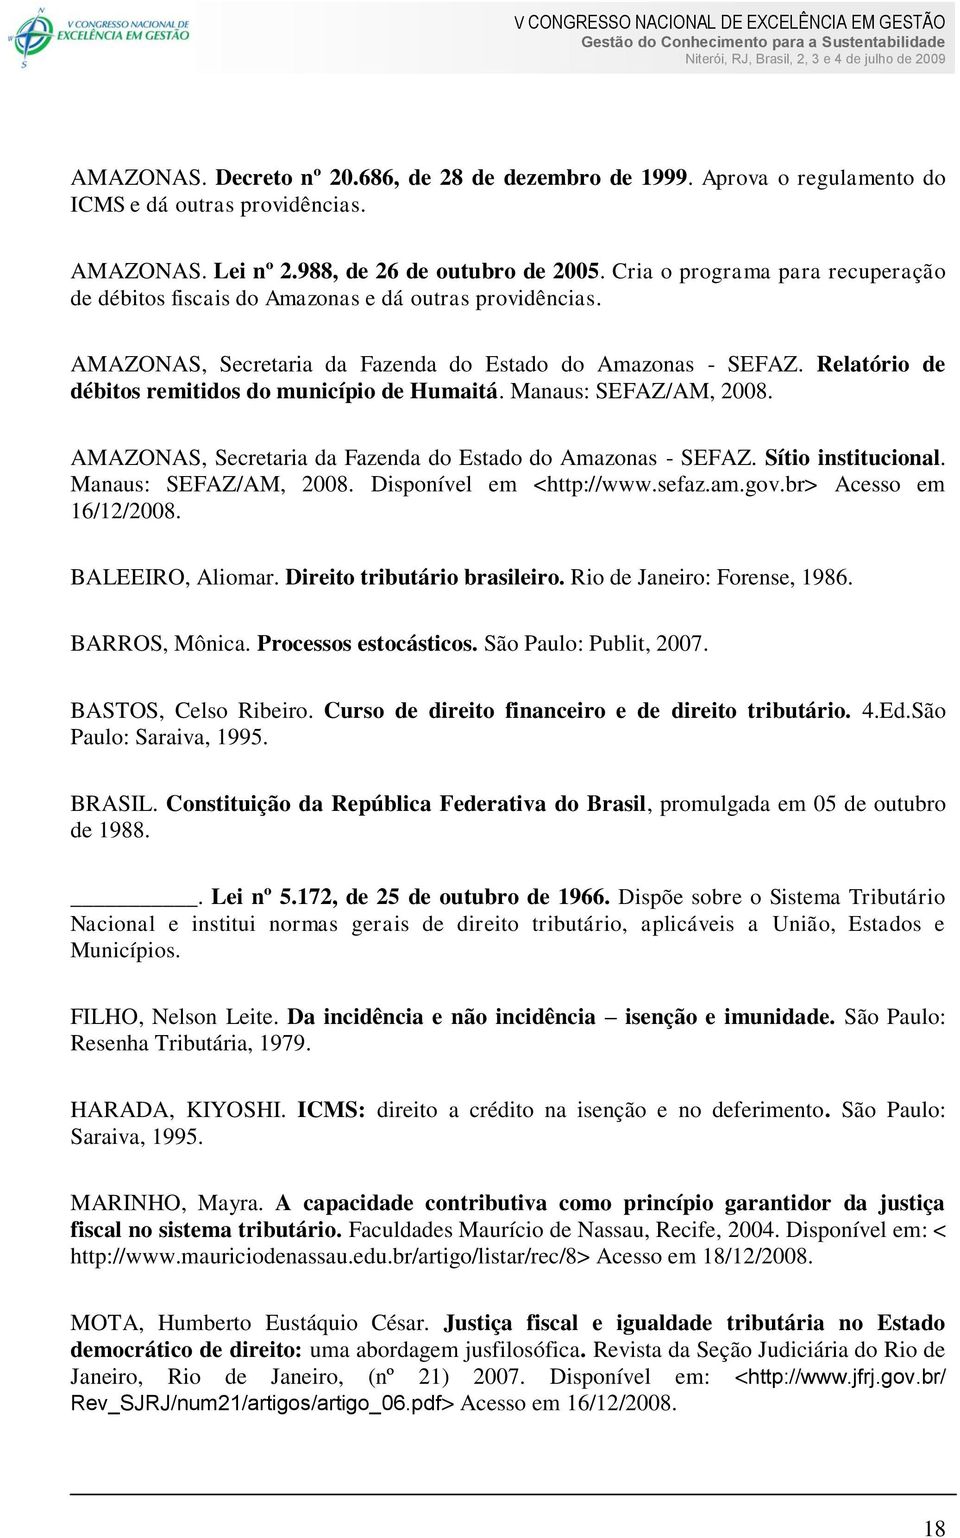 Relatório de débitos remitidos do município de Humaitá. Manaus: SEFAZ/AM, 2008. AMAZONAS, Secretaria da Fazenda do Estado do Amazonas - SEFAZ. Sítio institucional. Manaus: SEFAZ/AM, 2008. Disponível em <http://www.